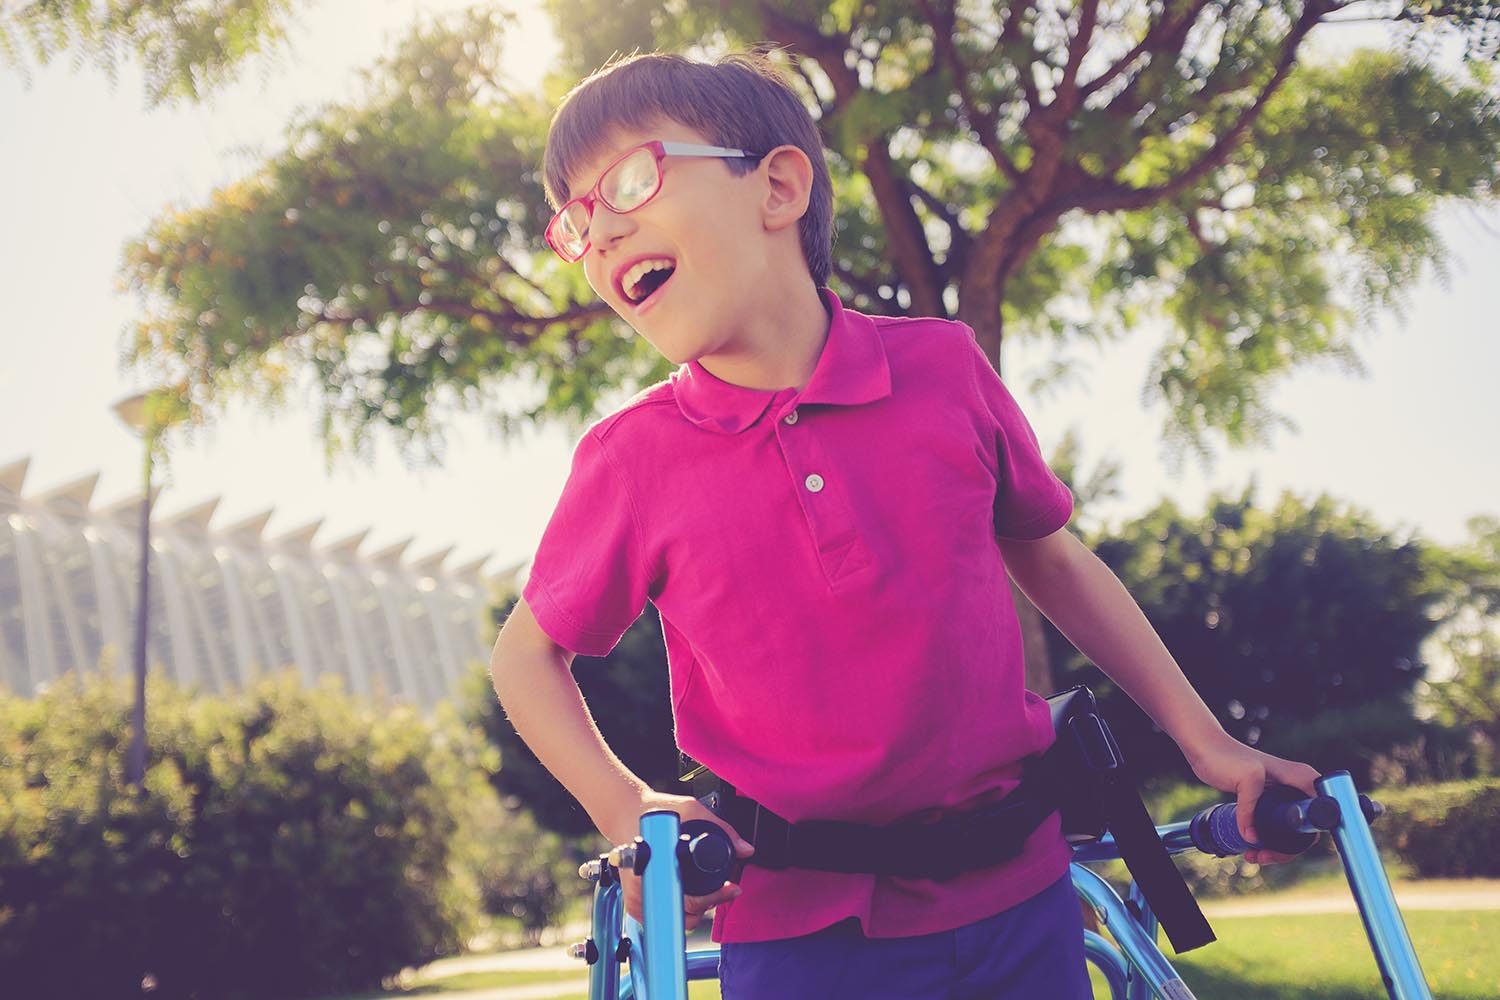 Nine year boy enjoying a walk in a sunny park using walking frame